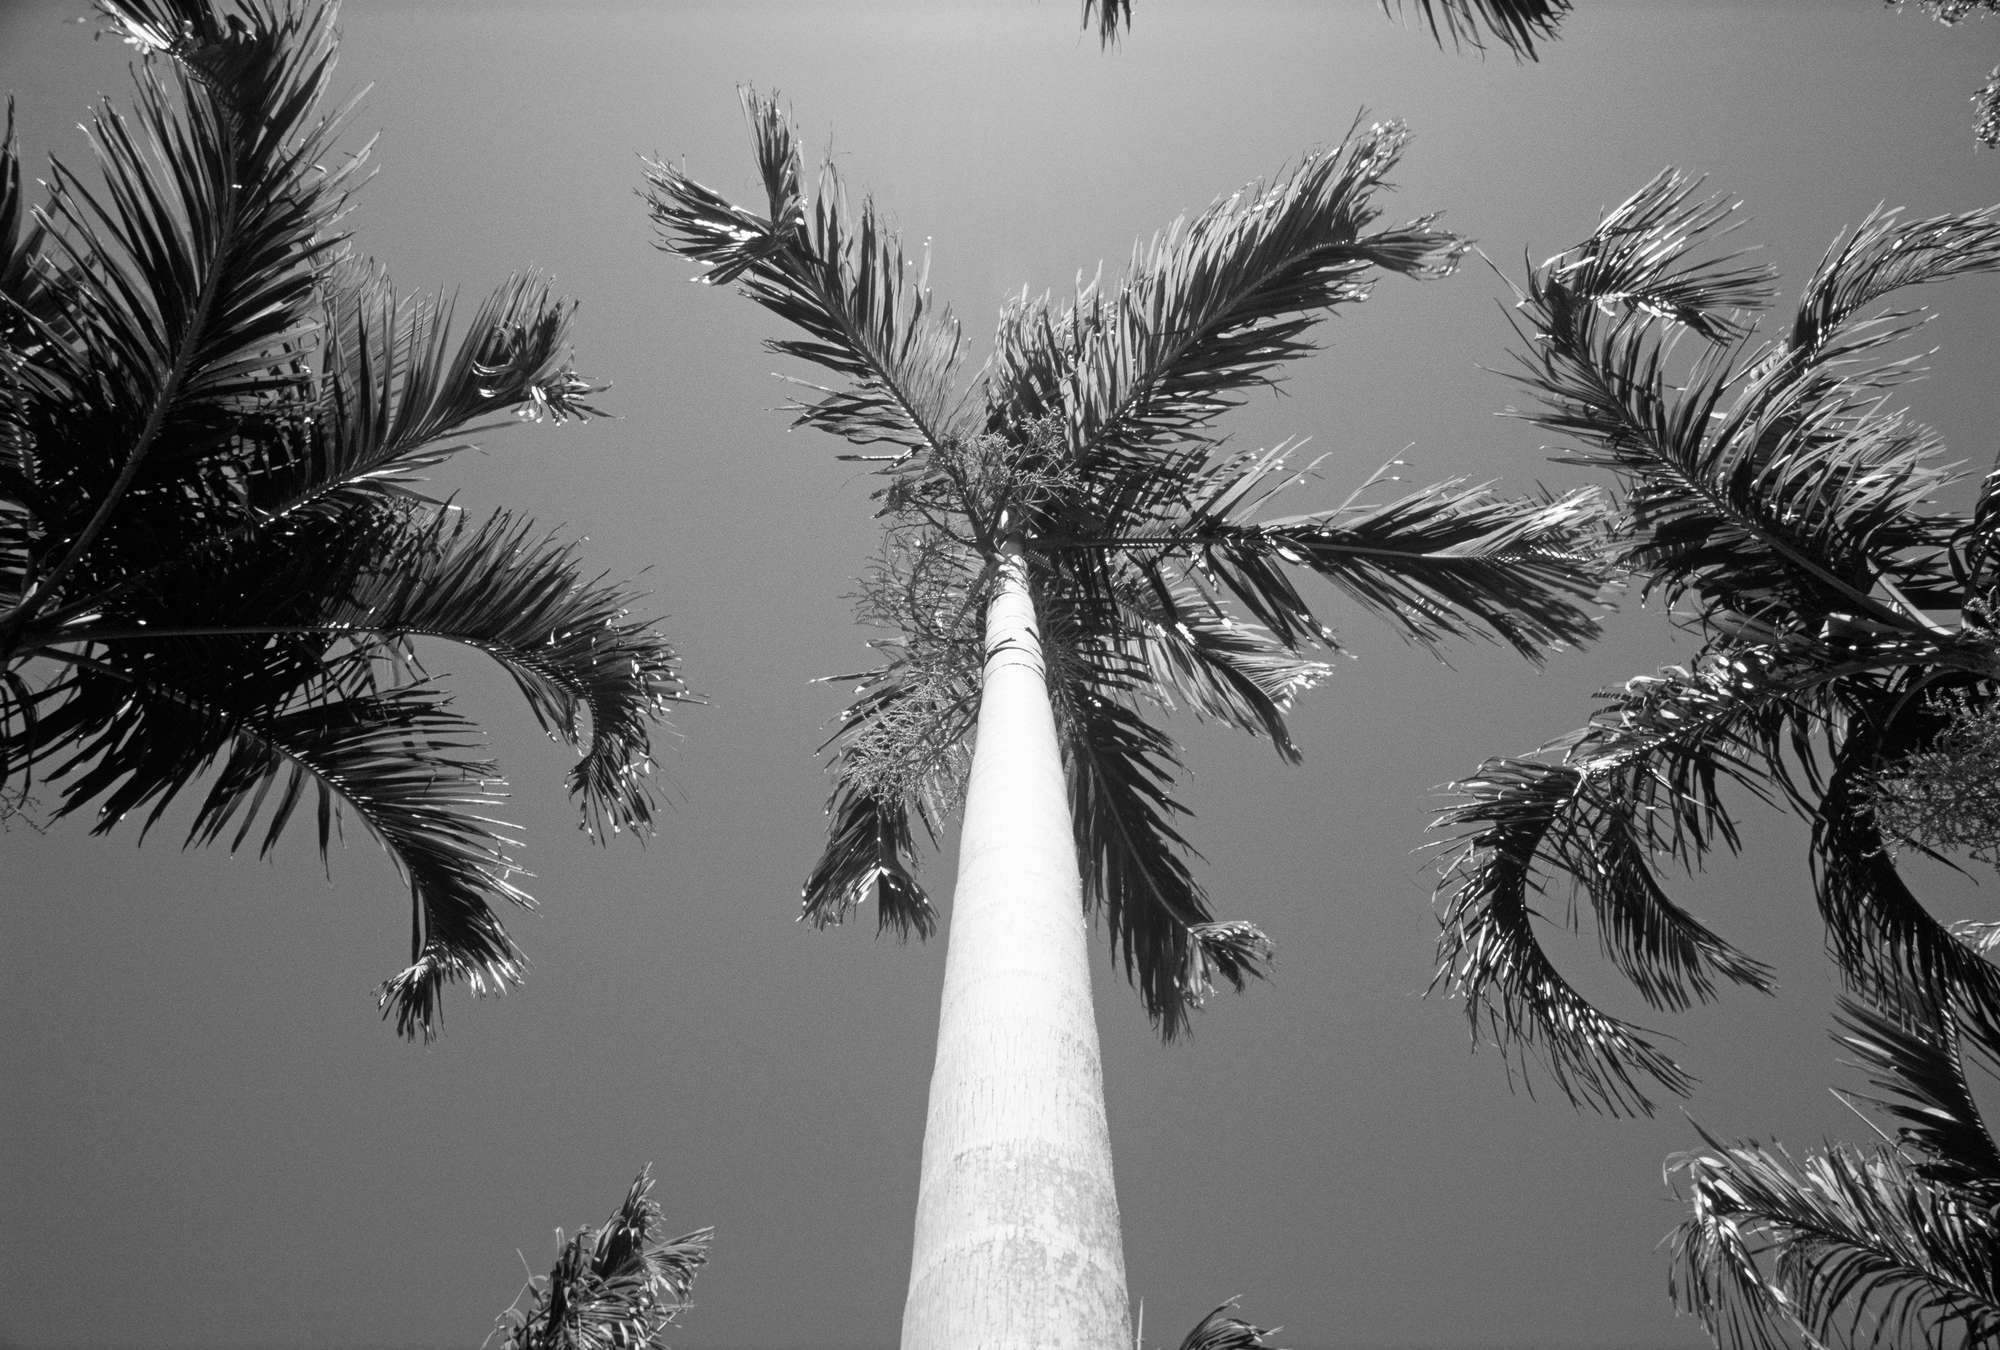             Palmeras - Mural en blanco y negro con palmeras
        